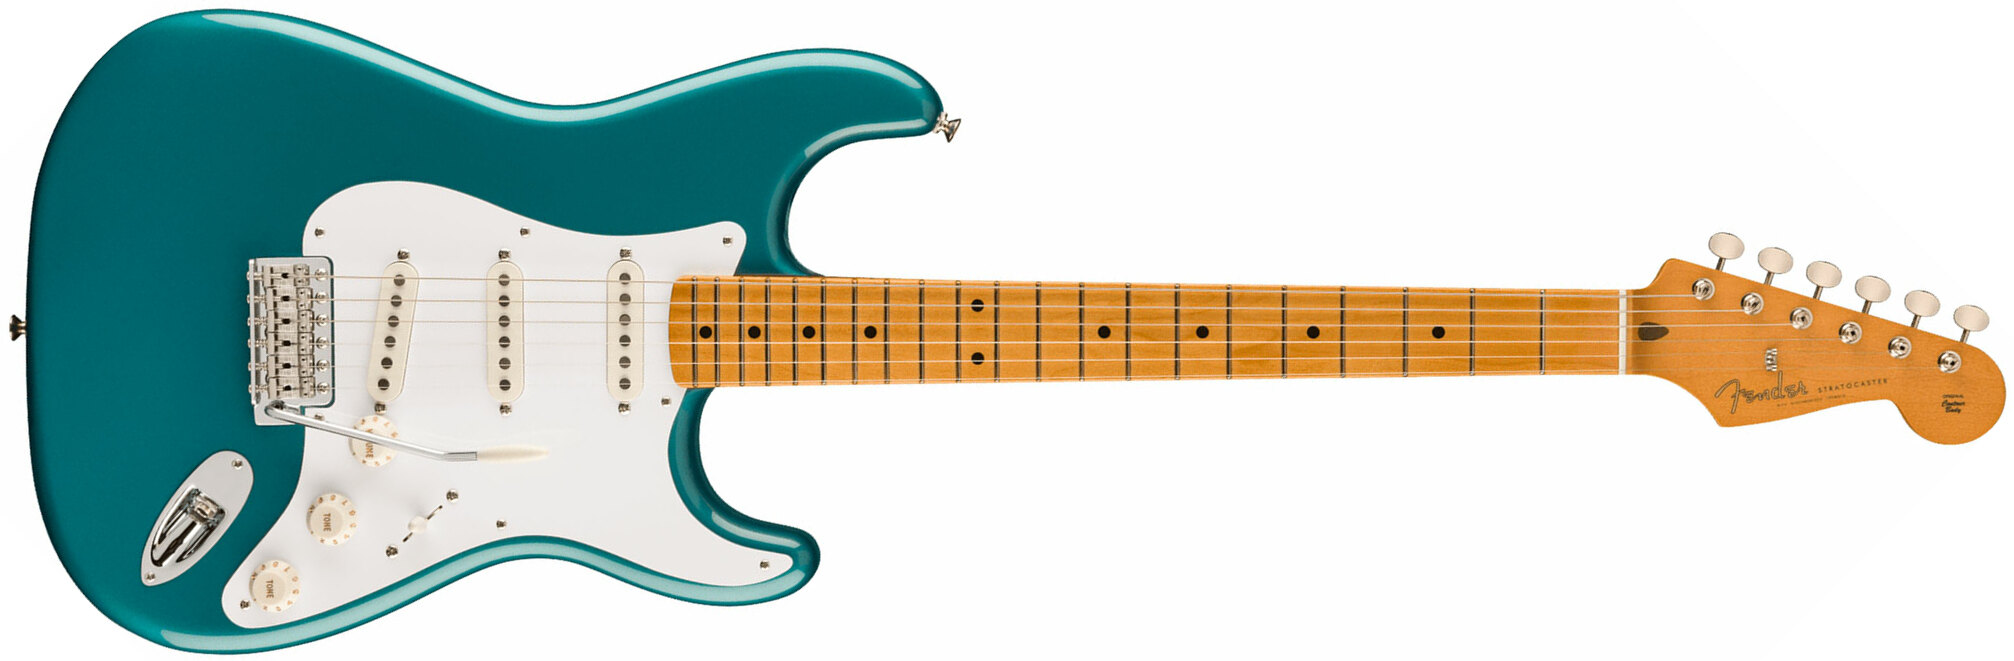 Fender Strat 50s Vintera 2 Mex 3s Trem Mn - Ocean Turquoise - Elektrische gitaar in Str-vorm - Main picture